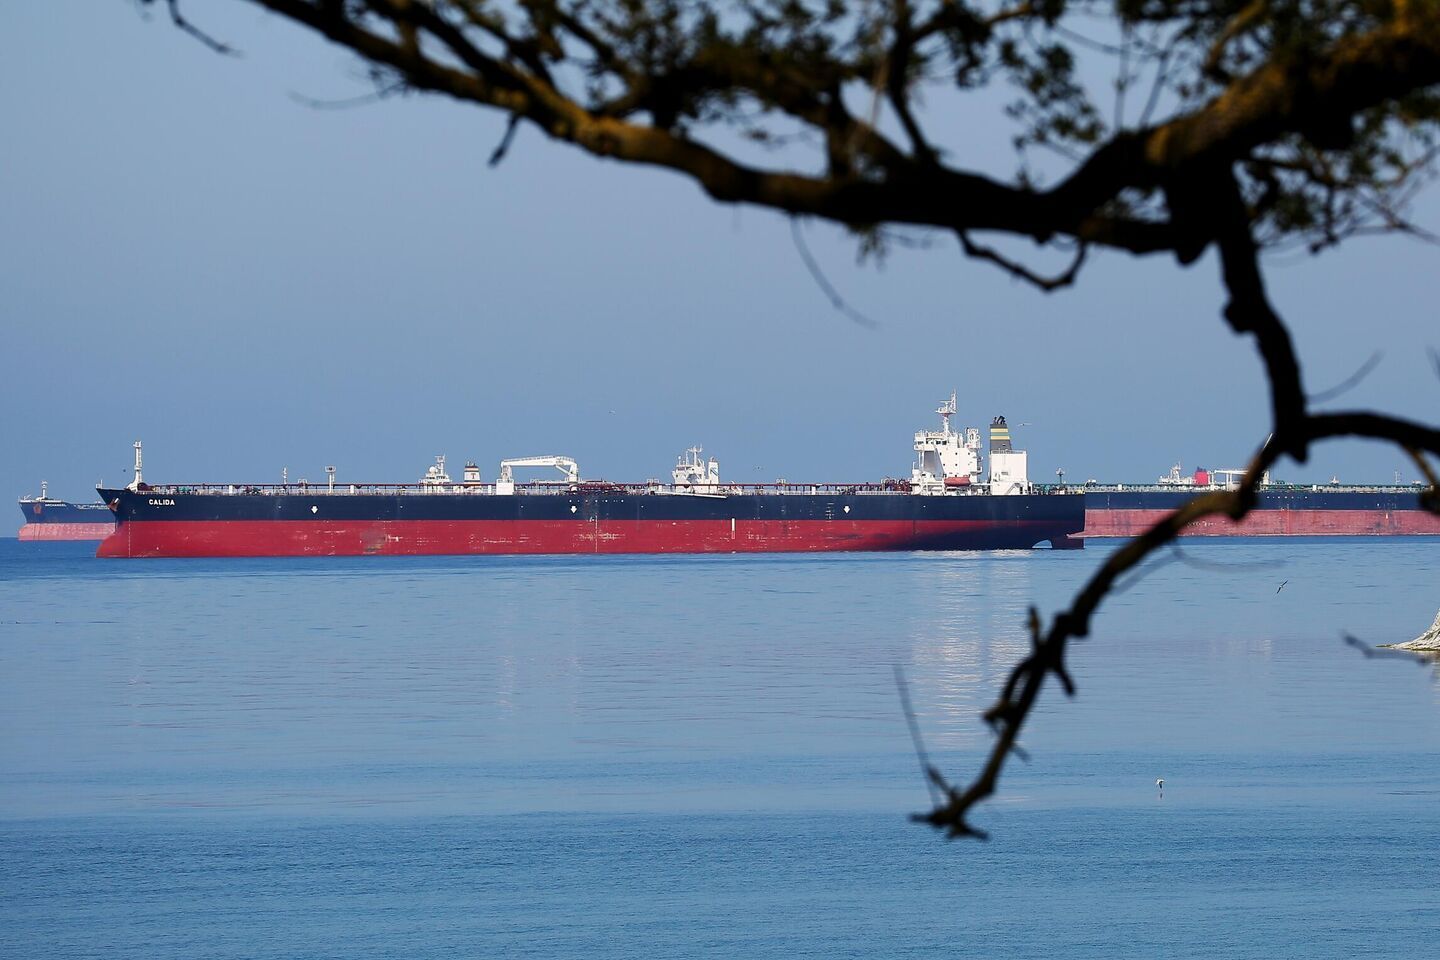 РФ знайшла спосіб обходити нафтові санкції за допомогою хитрої схеми, викрито 6 танкерів – NYT